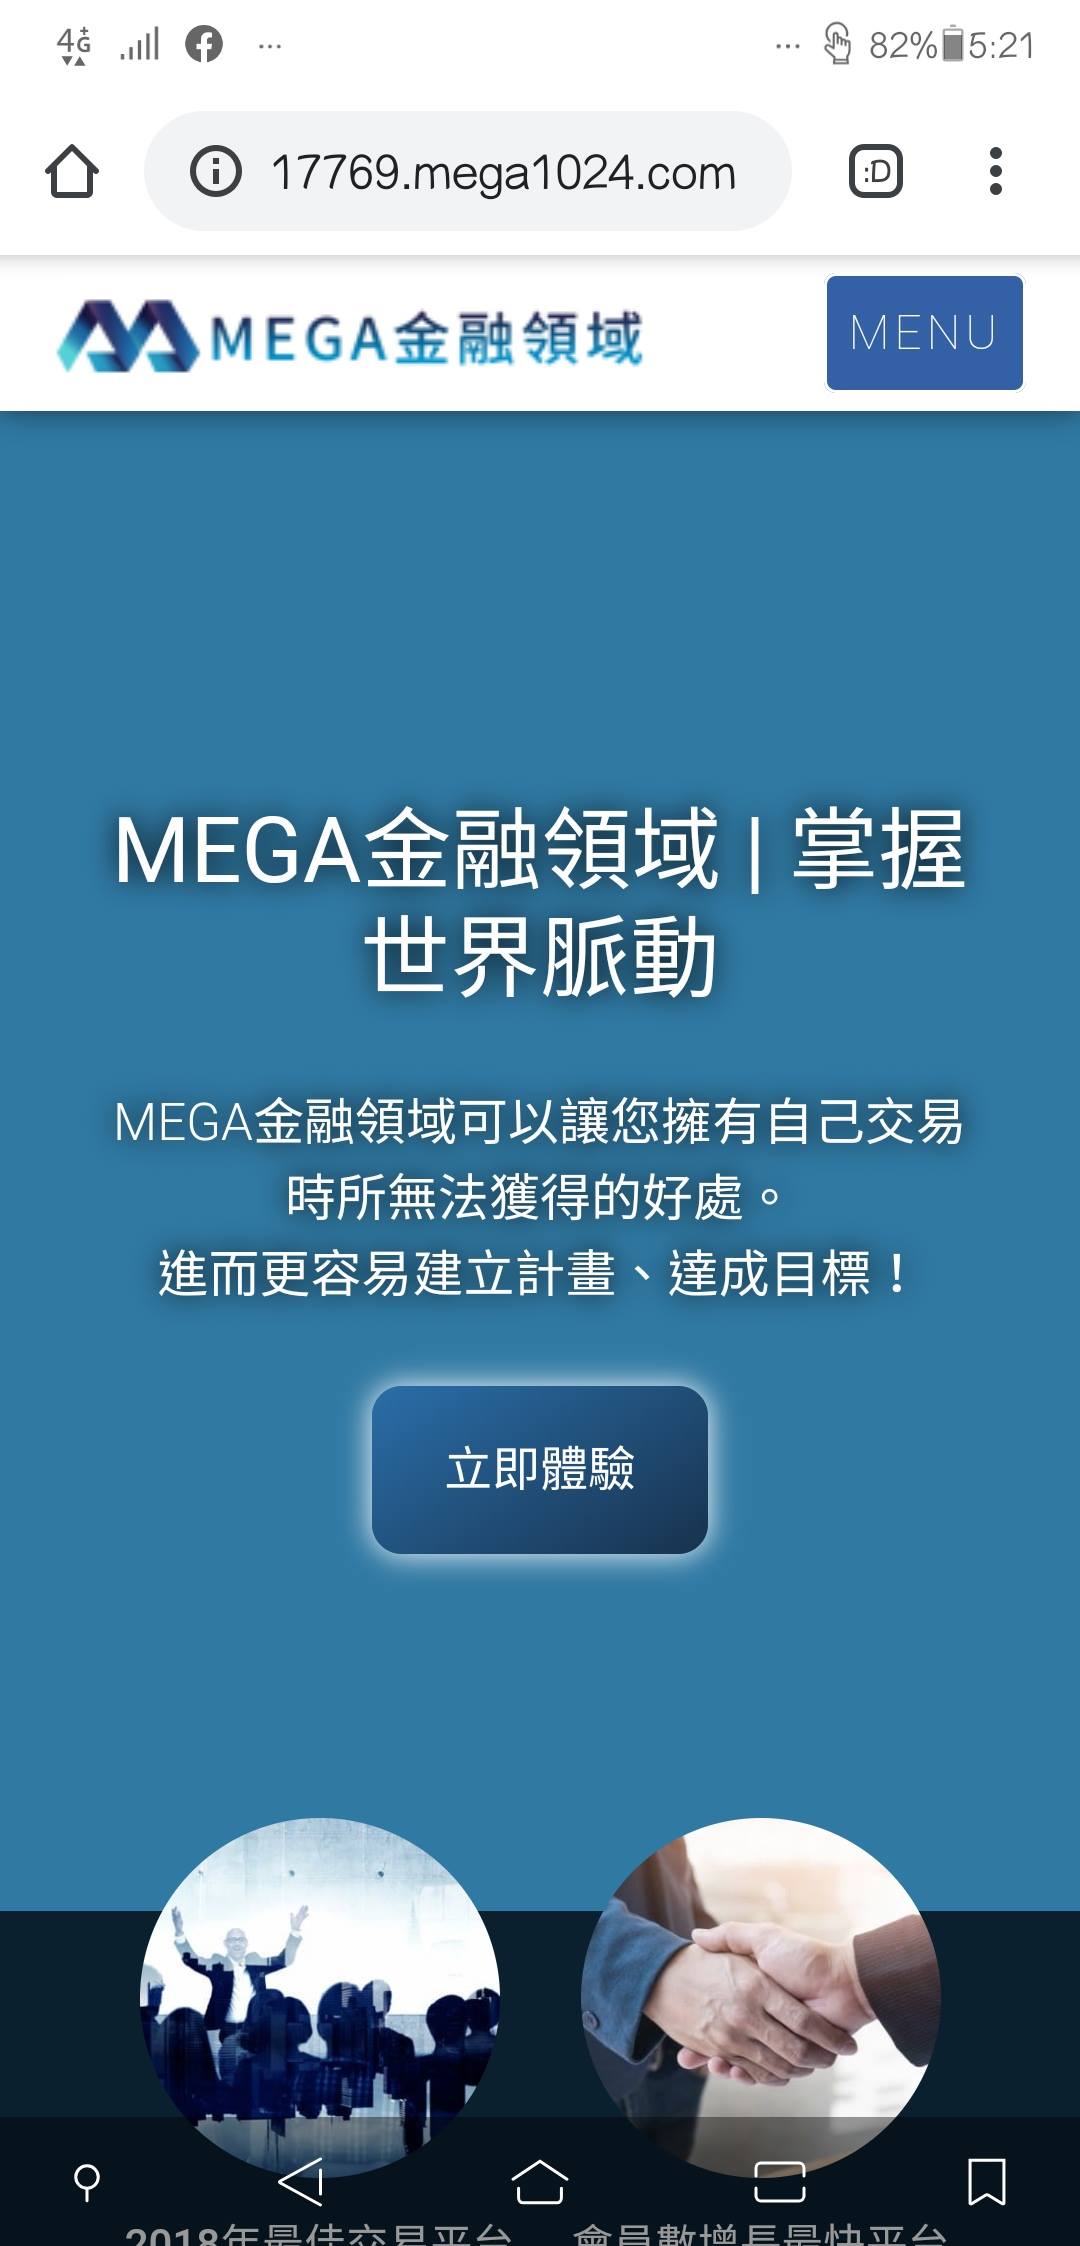 MEGA金融領域 請問這網站是真的嘛